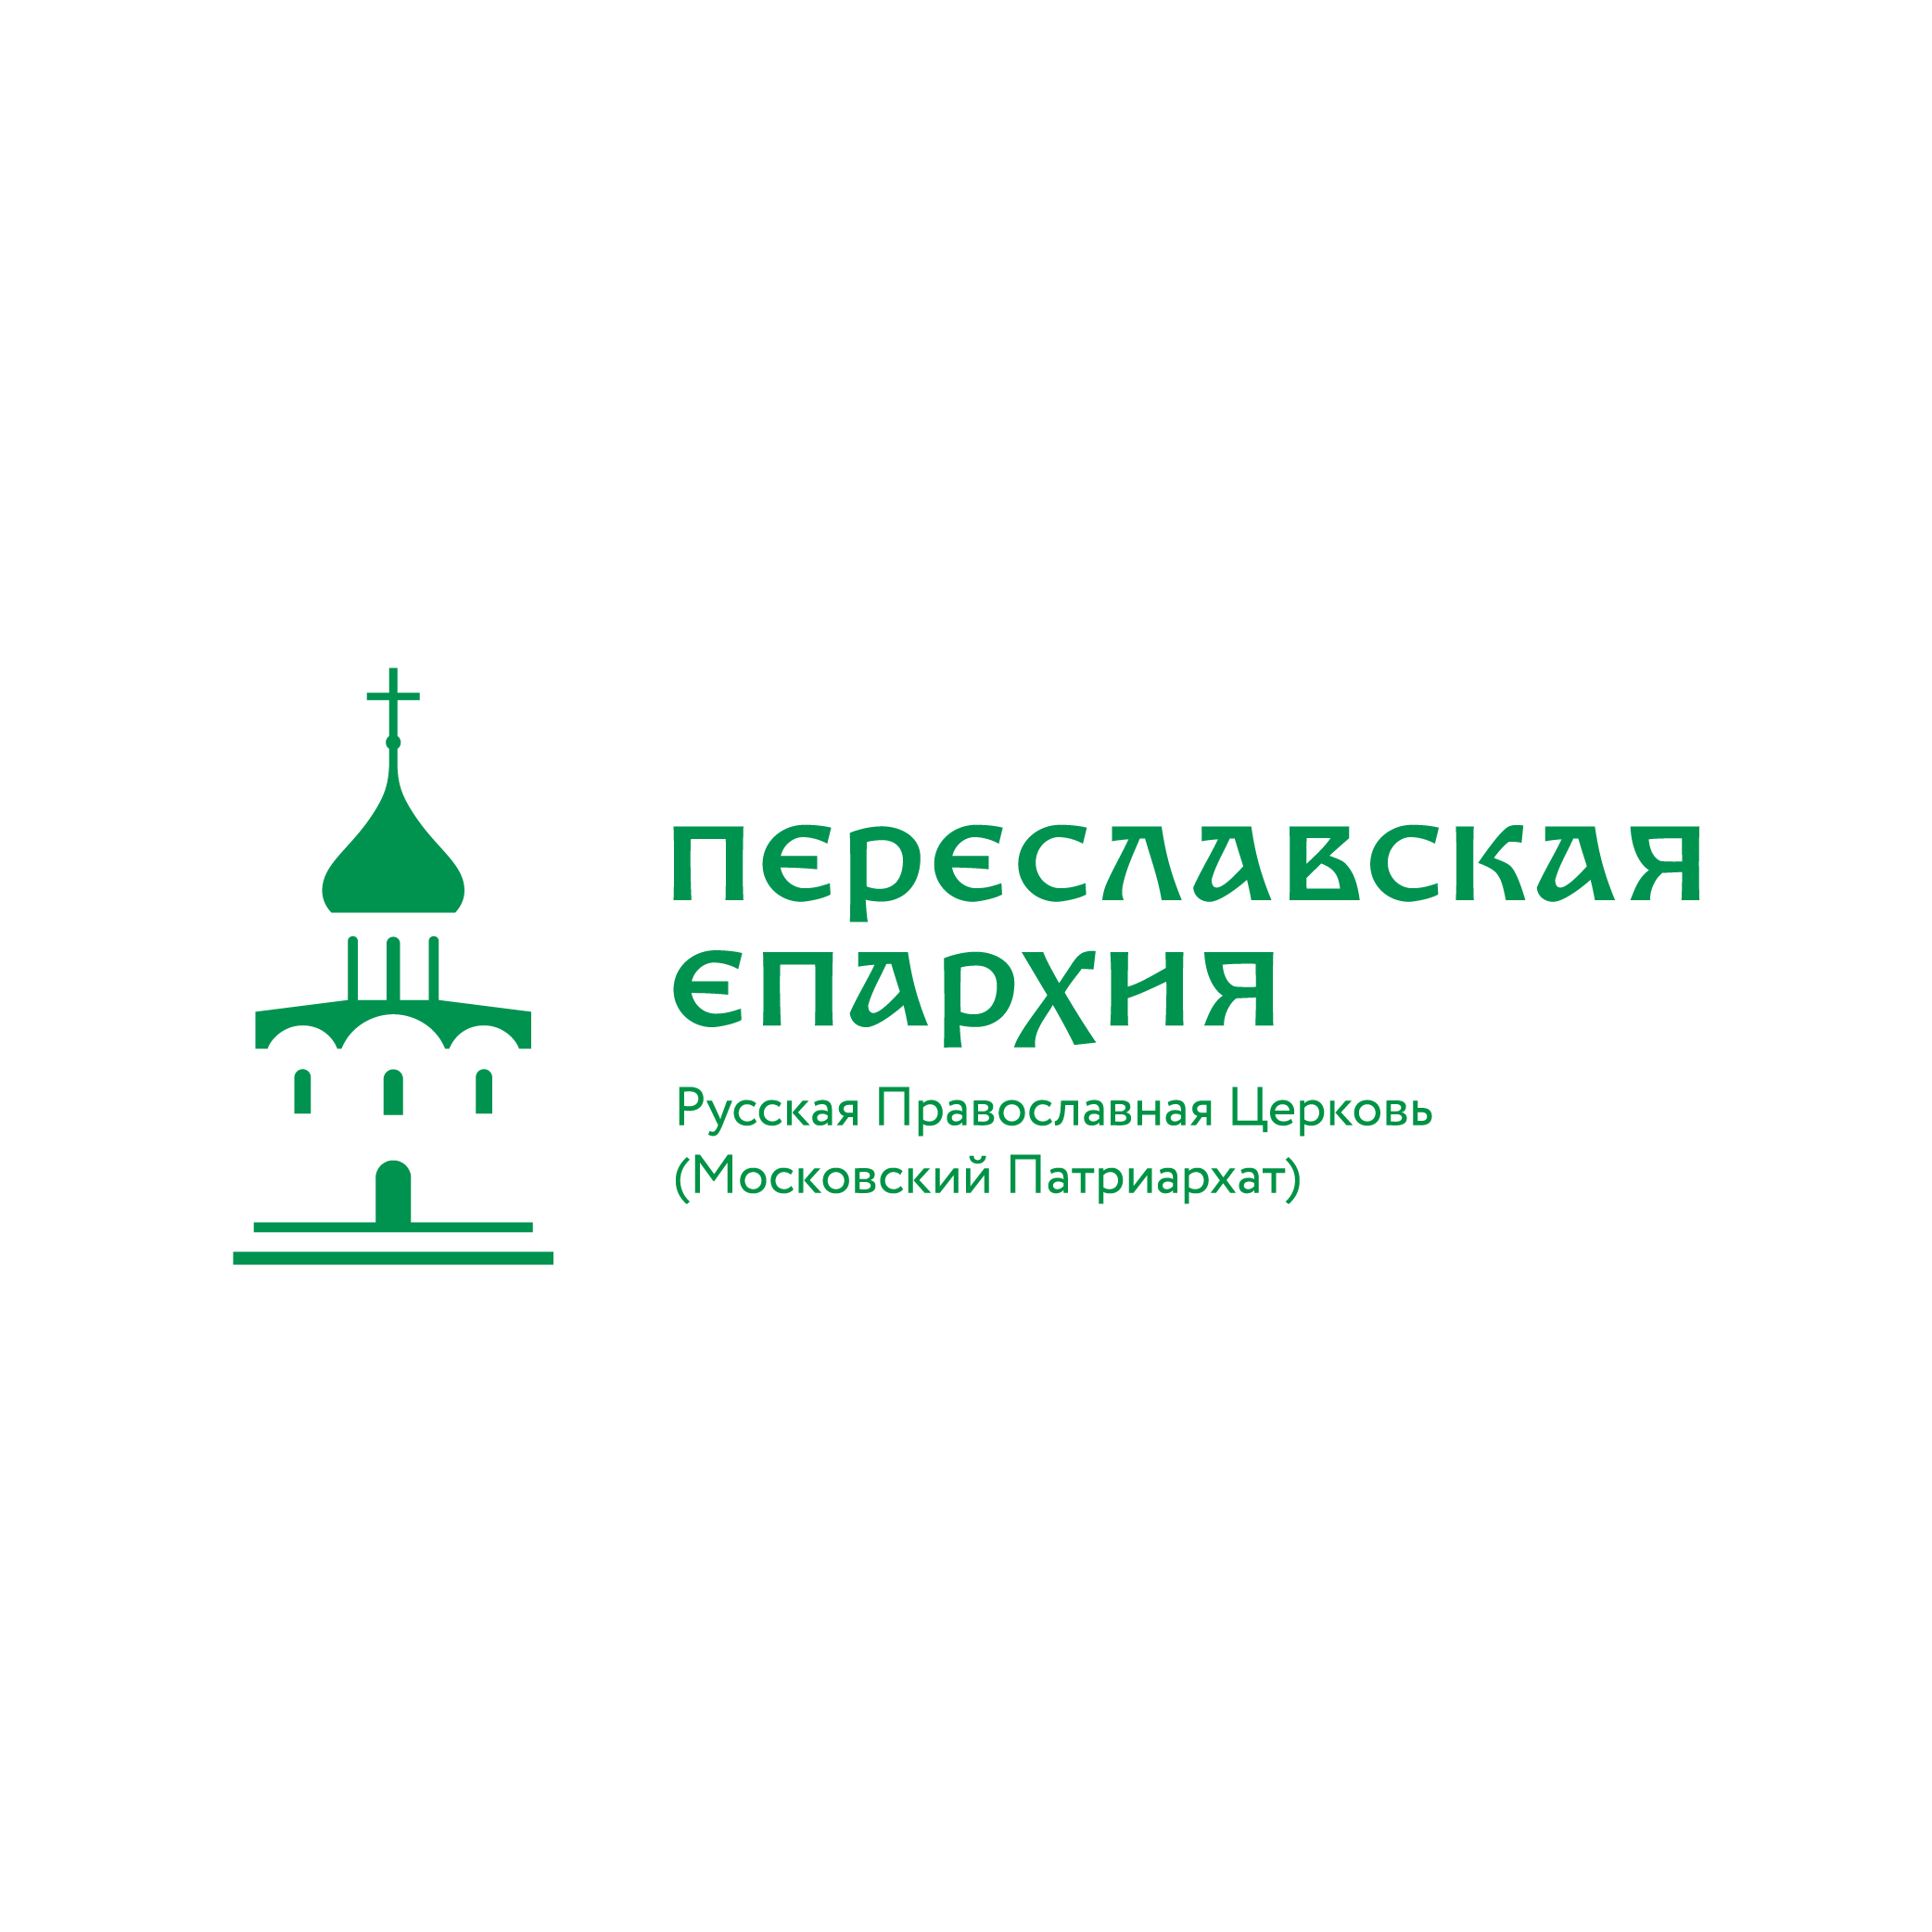  Переславская Епархия Русской Православной Церкви 